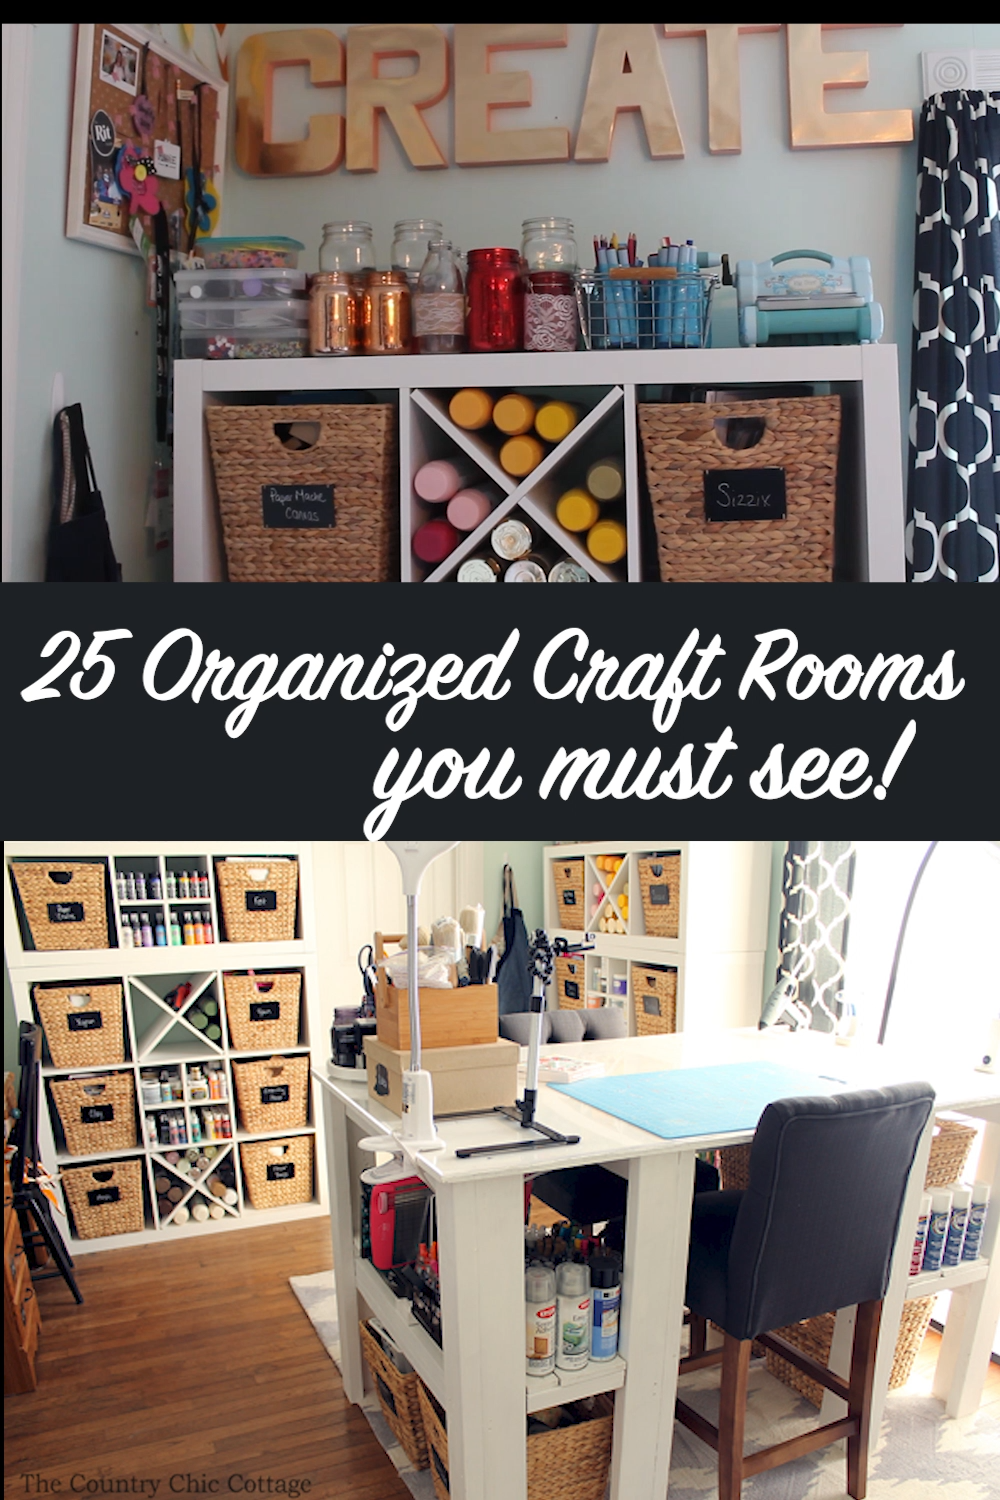 25 Organized Craft Rooms - 25 Organized Craft Rooms -   18 diy Ideen organisation ideas